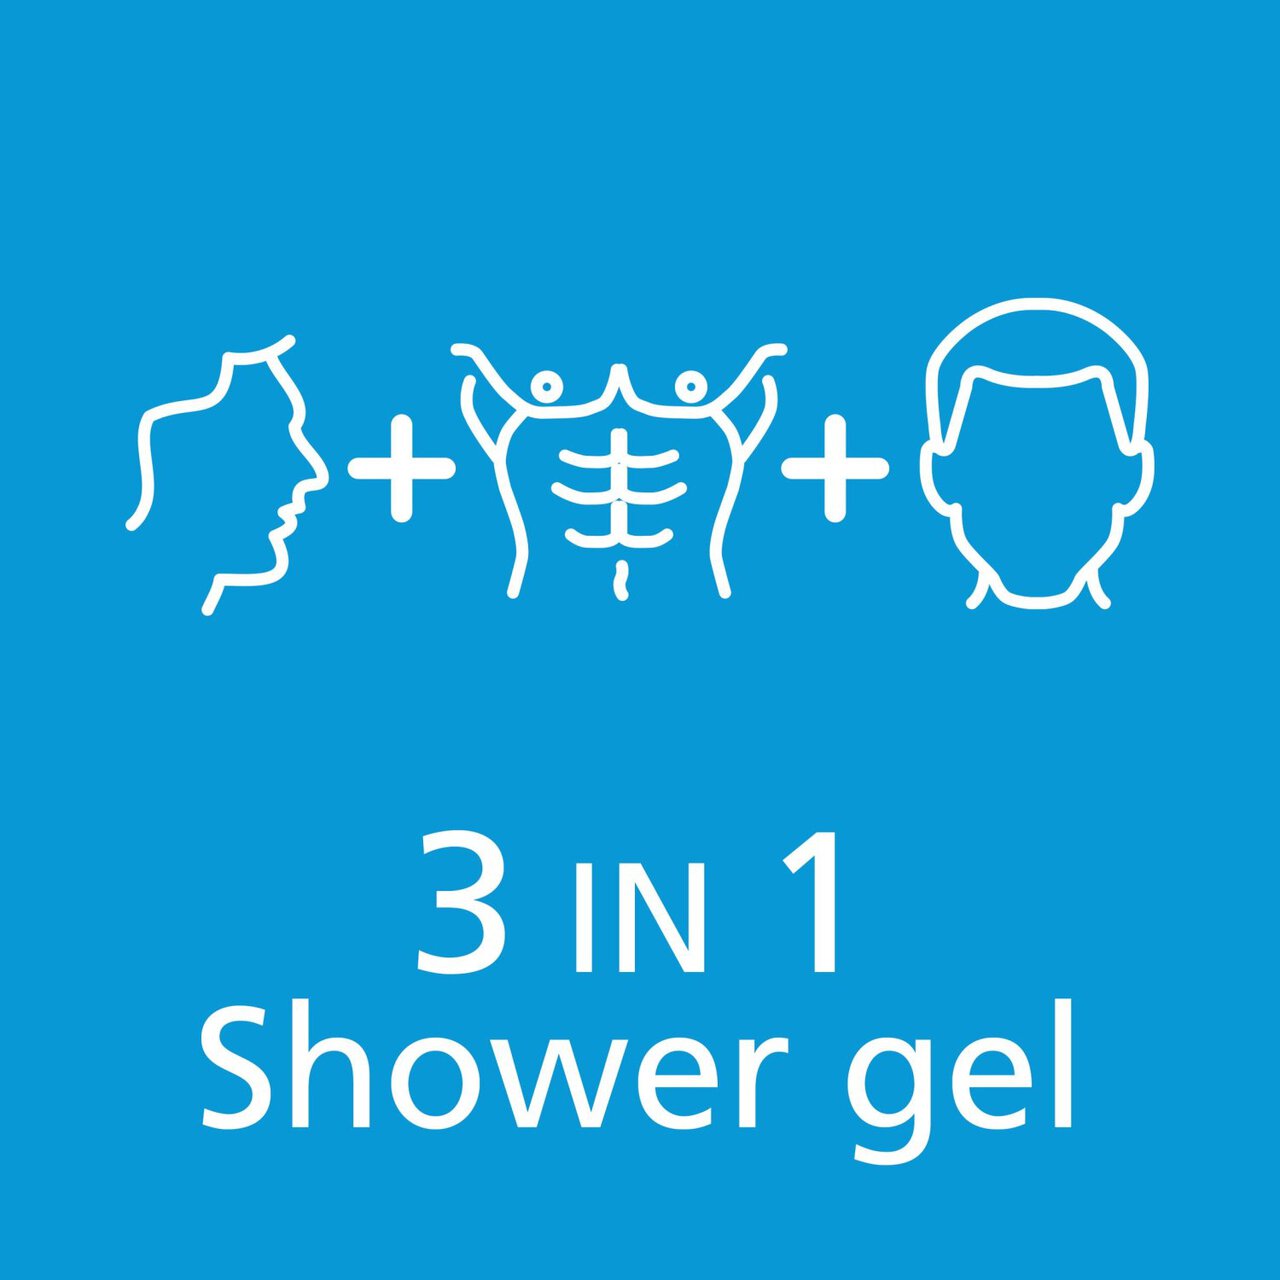 Sanex Men Sensitive Skin Body & Face Shower Gel 500ml